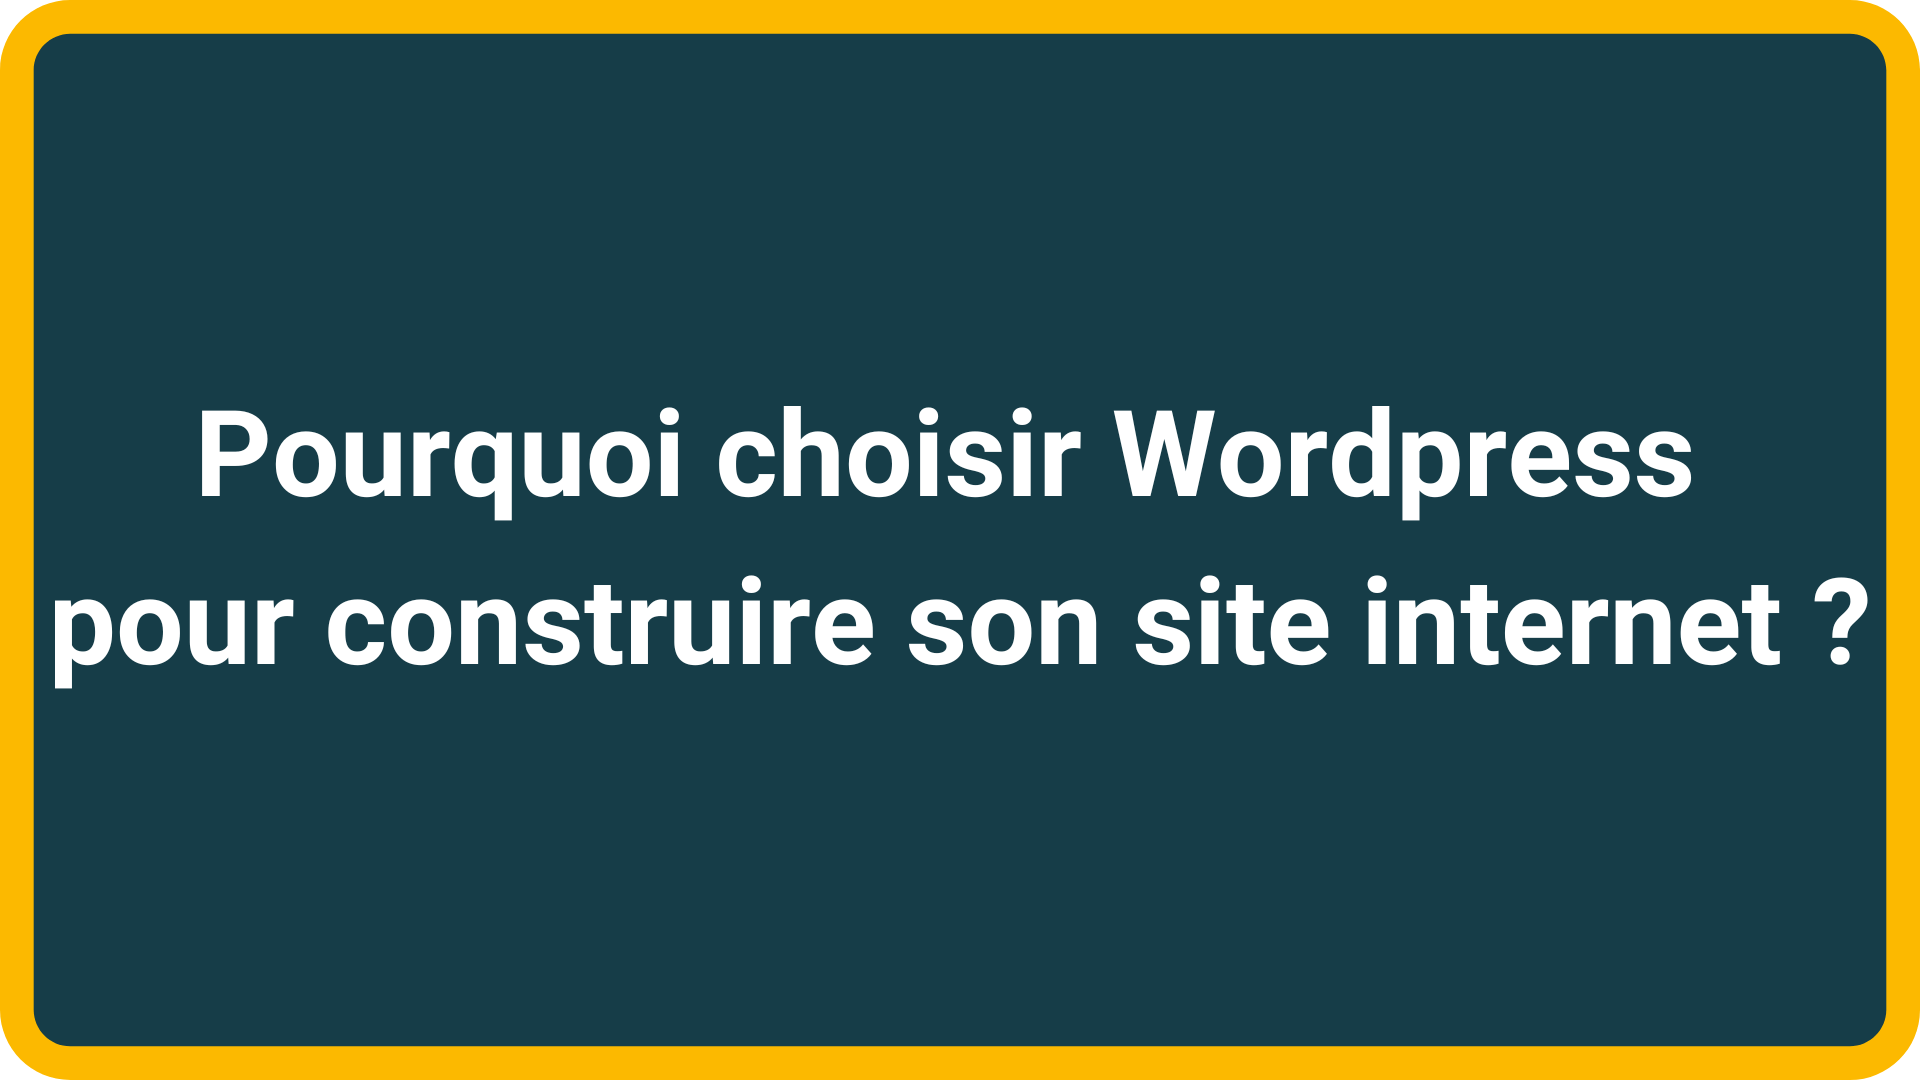 Pourquoi choisir Wordpress pour construire son site internet